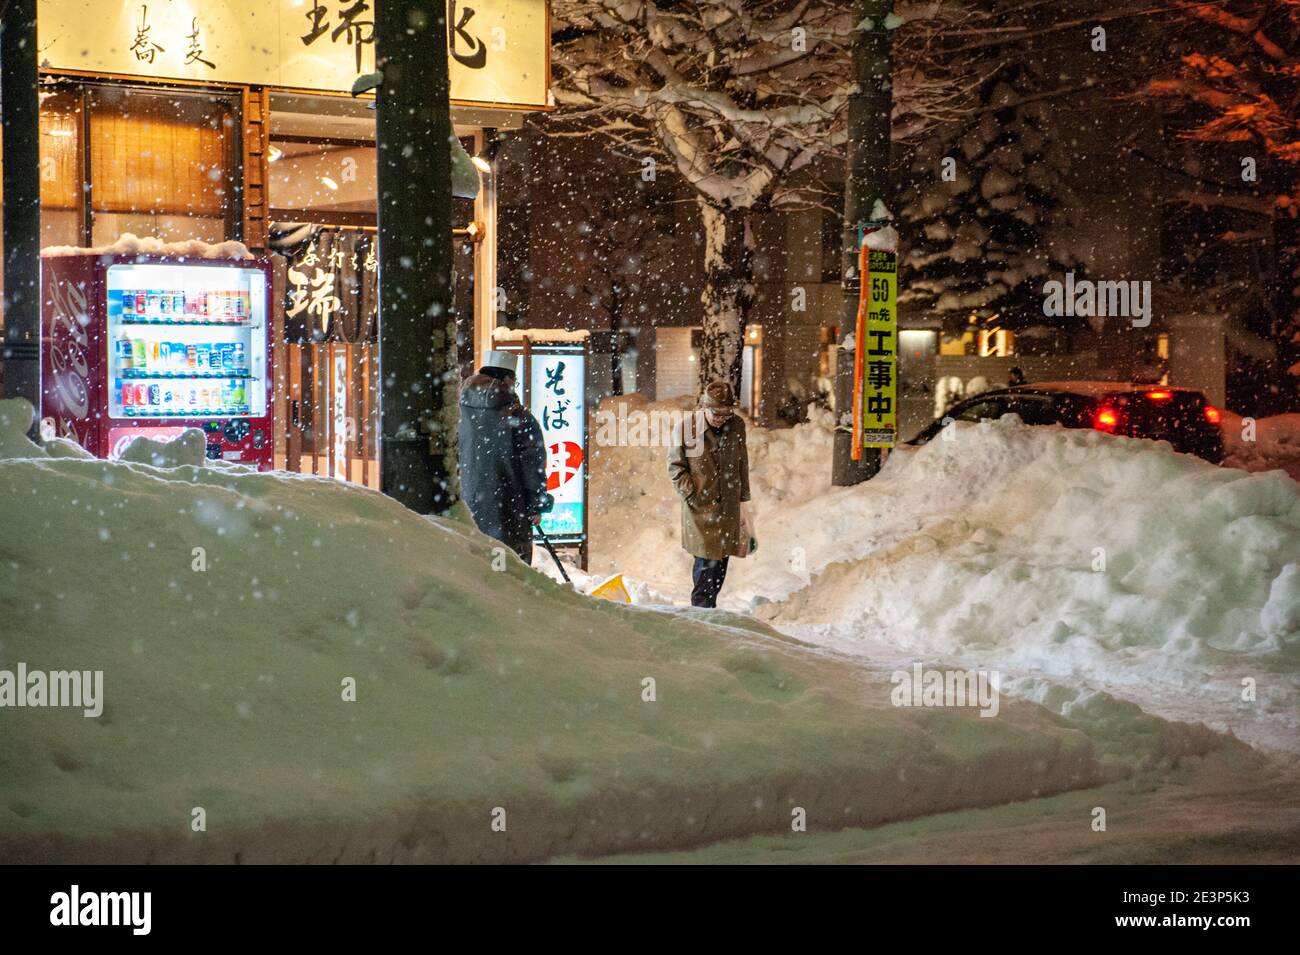 Chutes de neige abondantes dans la ville japonaise. Scène nocturne en face du restaurant Soba. Banque D'Images